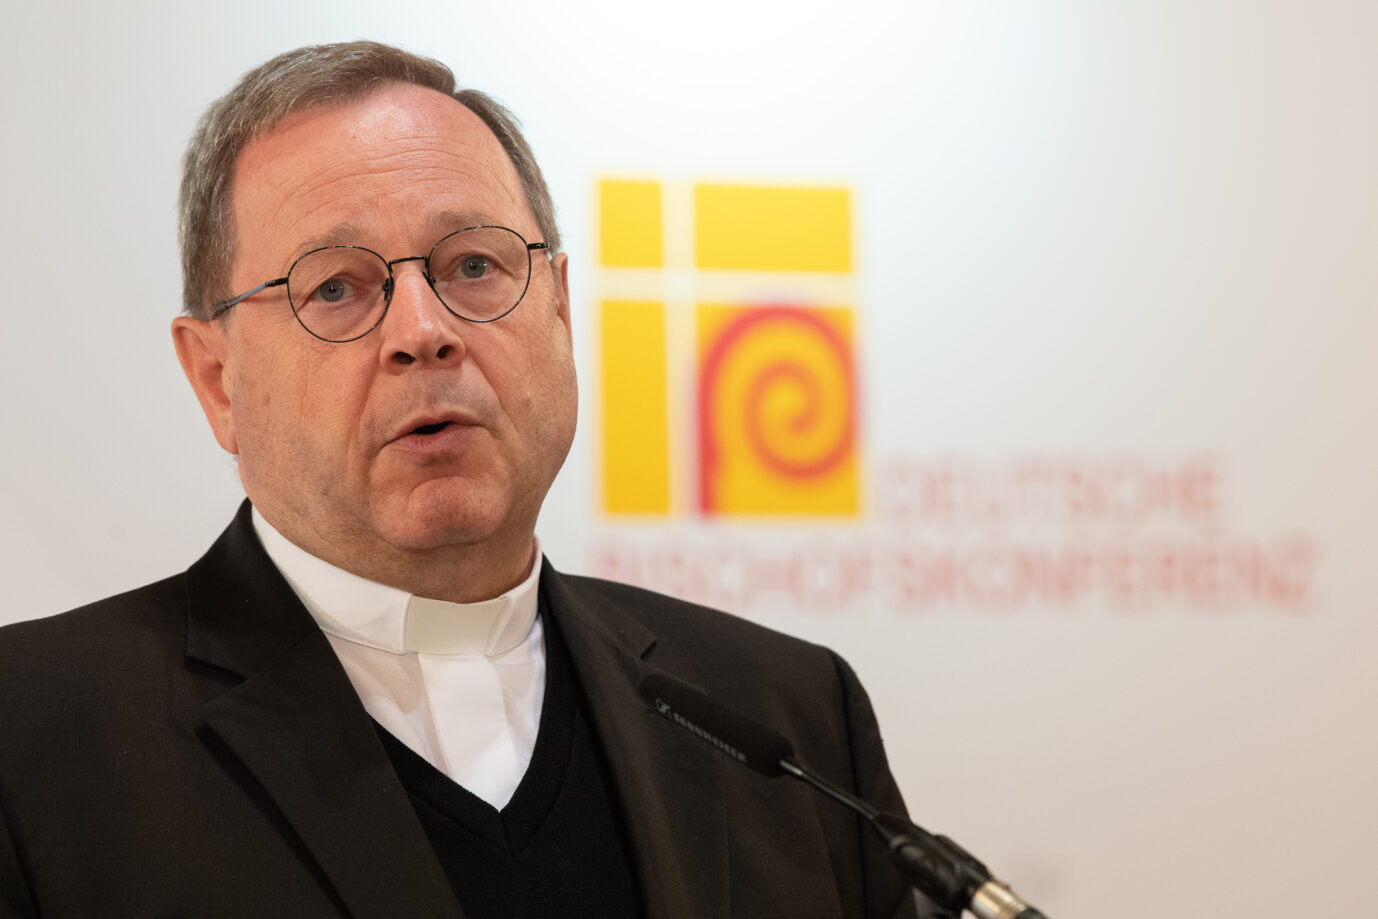 Georg Bätzing von der Deutschen Bischofskonferenz trägt ein dunkles Gewand. Er ist besorgt über die vielen Kirchen-Austritte.